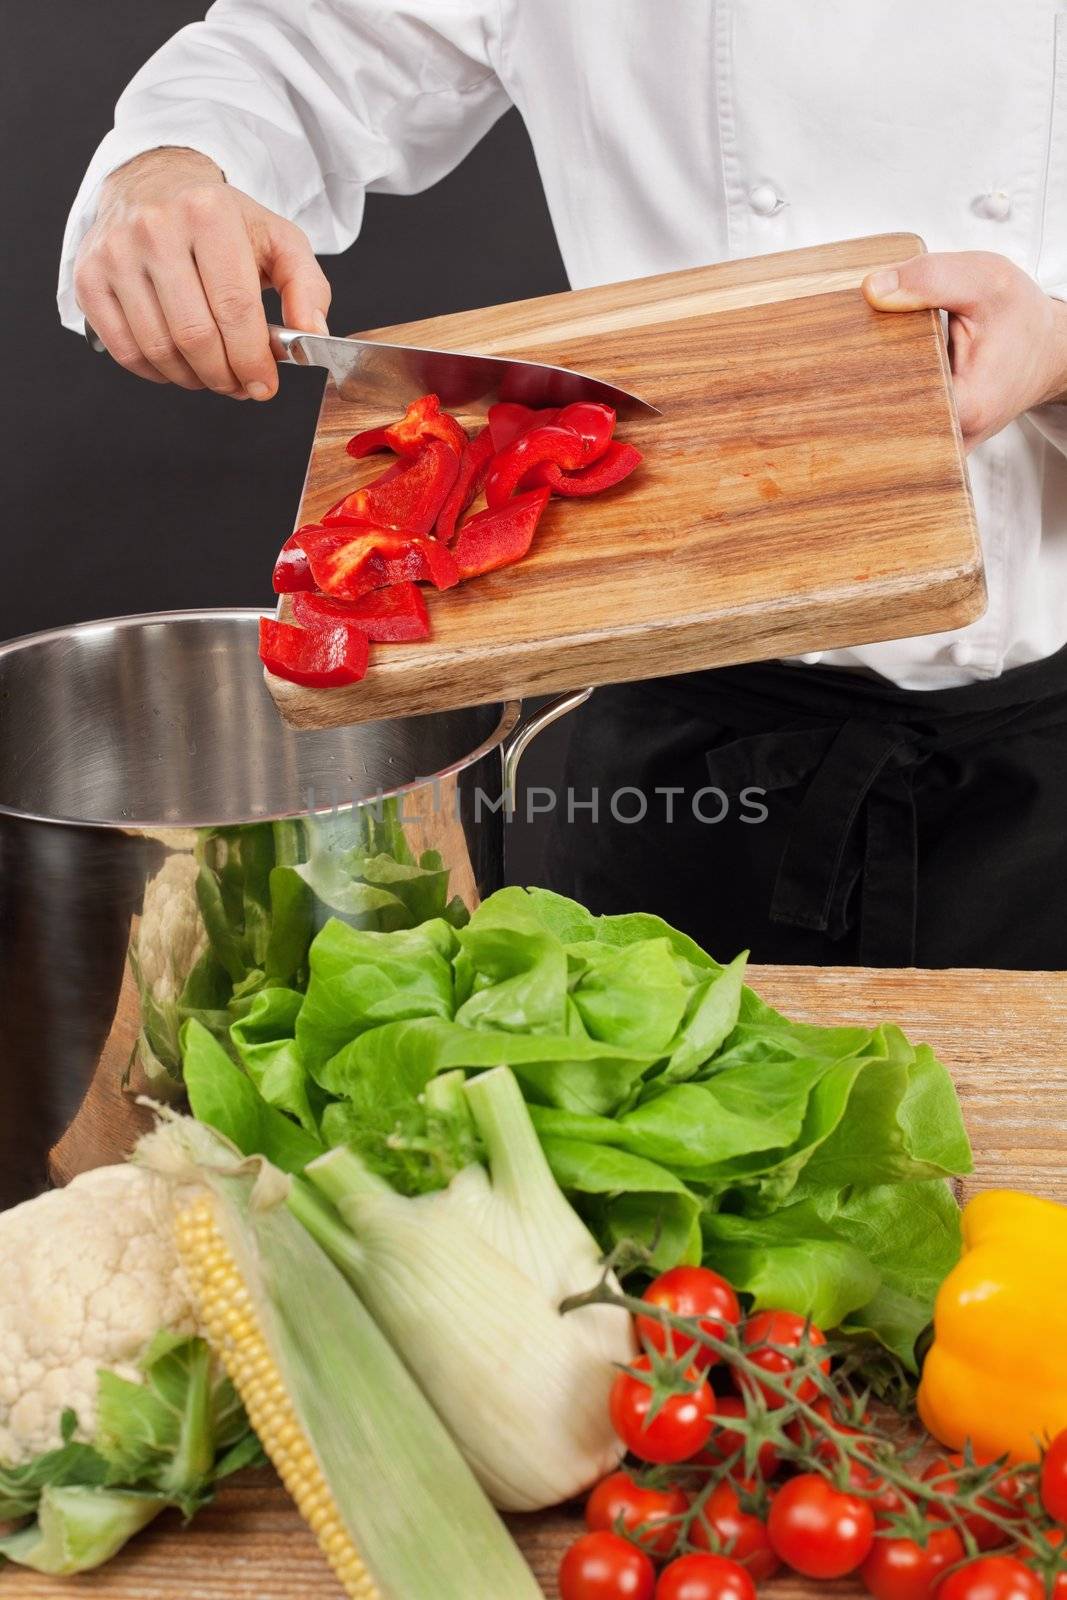 Chef preparing food by sumners